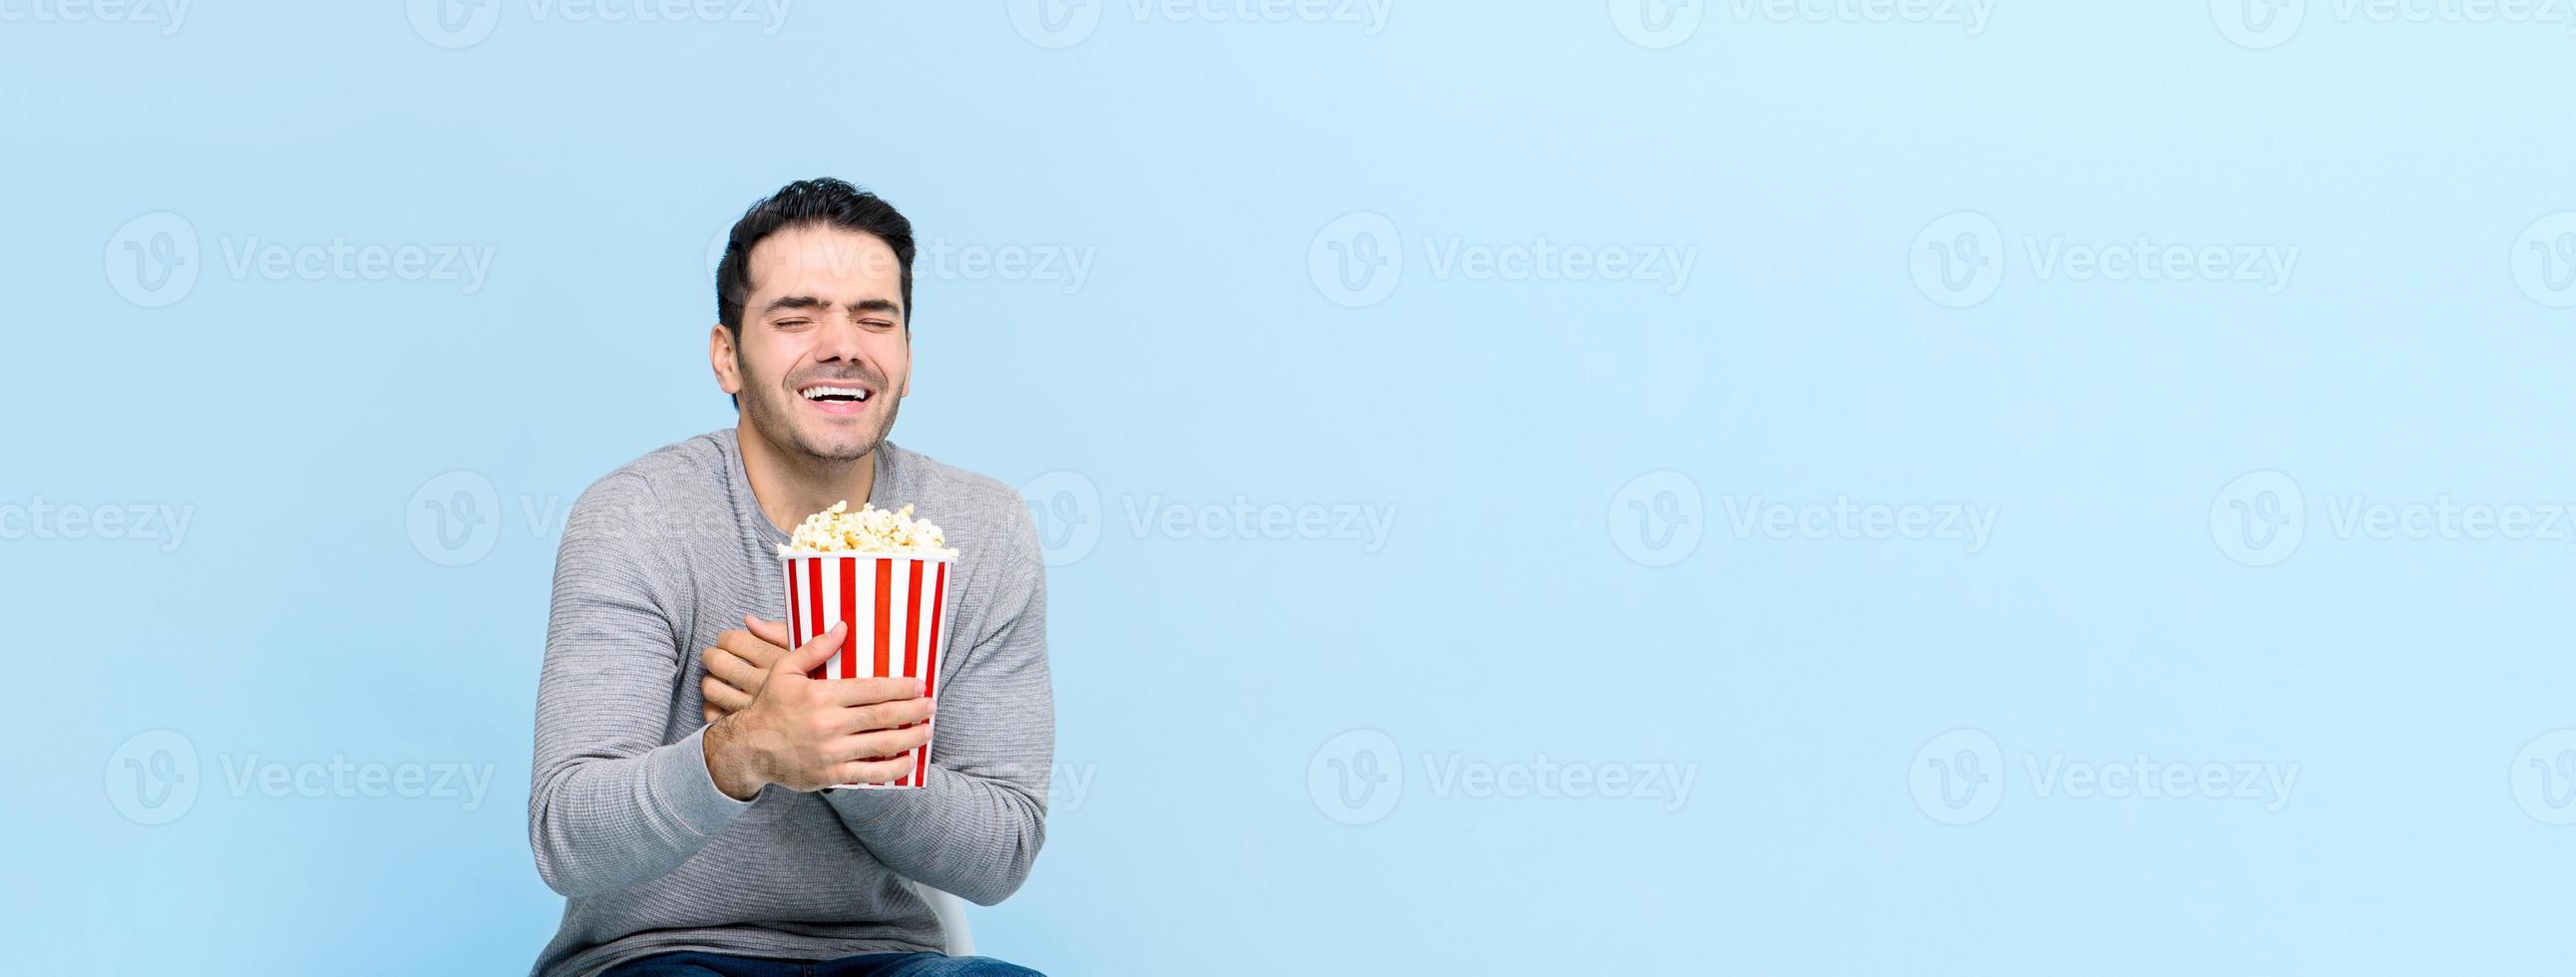 jonge man die popcorn vasthoudt terwijl hij naar een film kijkt die op een lichtblauwe bannerachtergrond met kopieerruimte wordt geïsoleerd foto